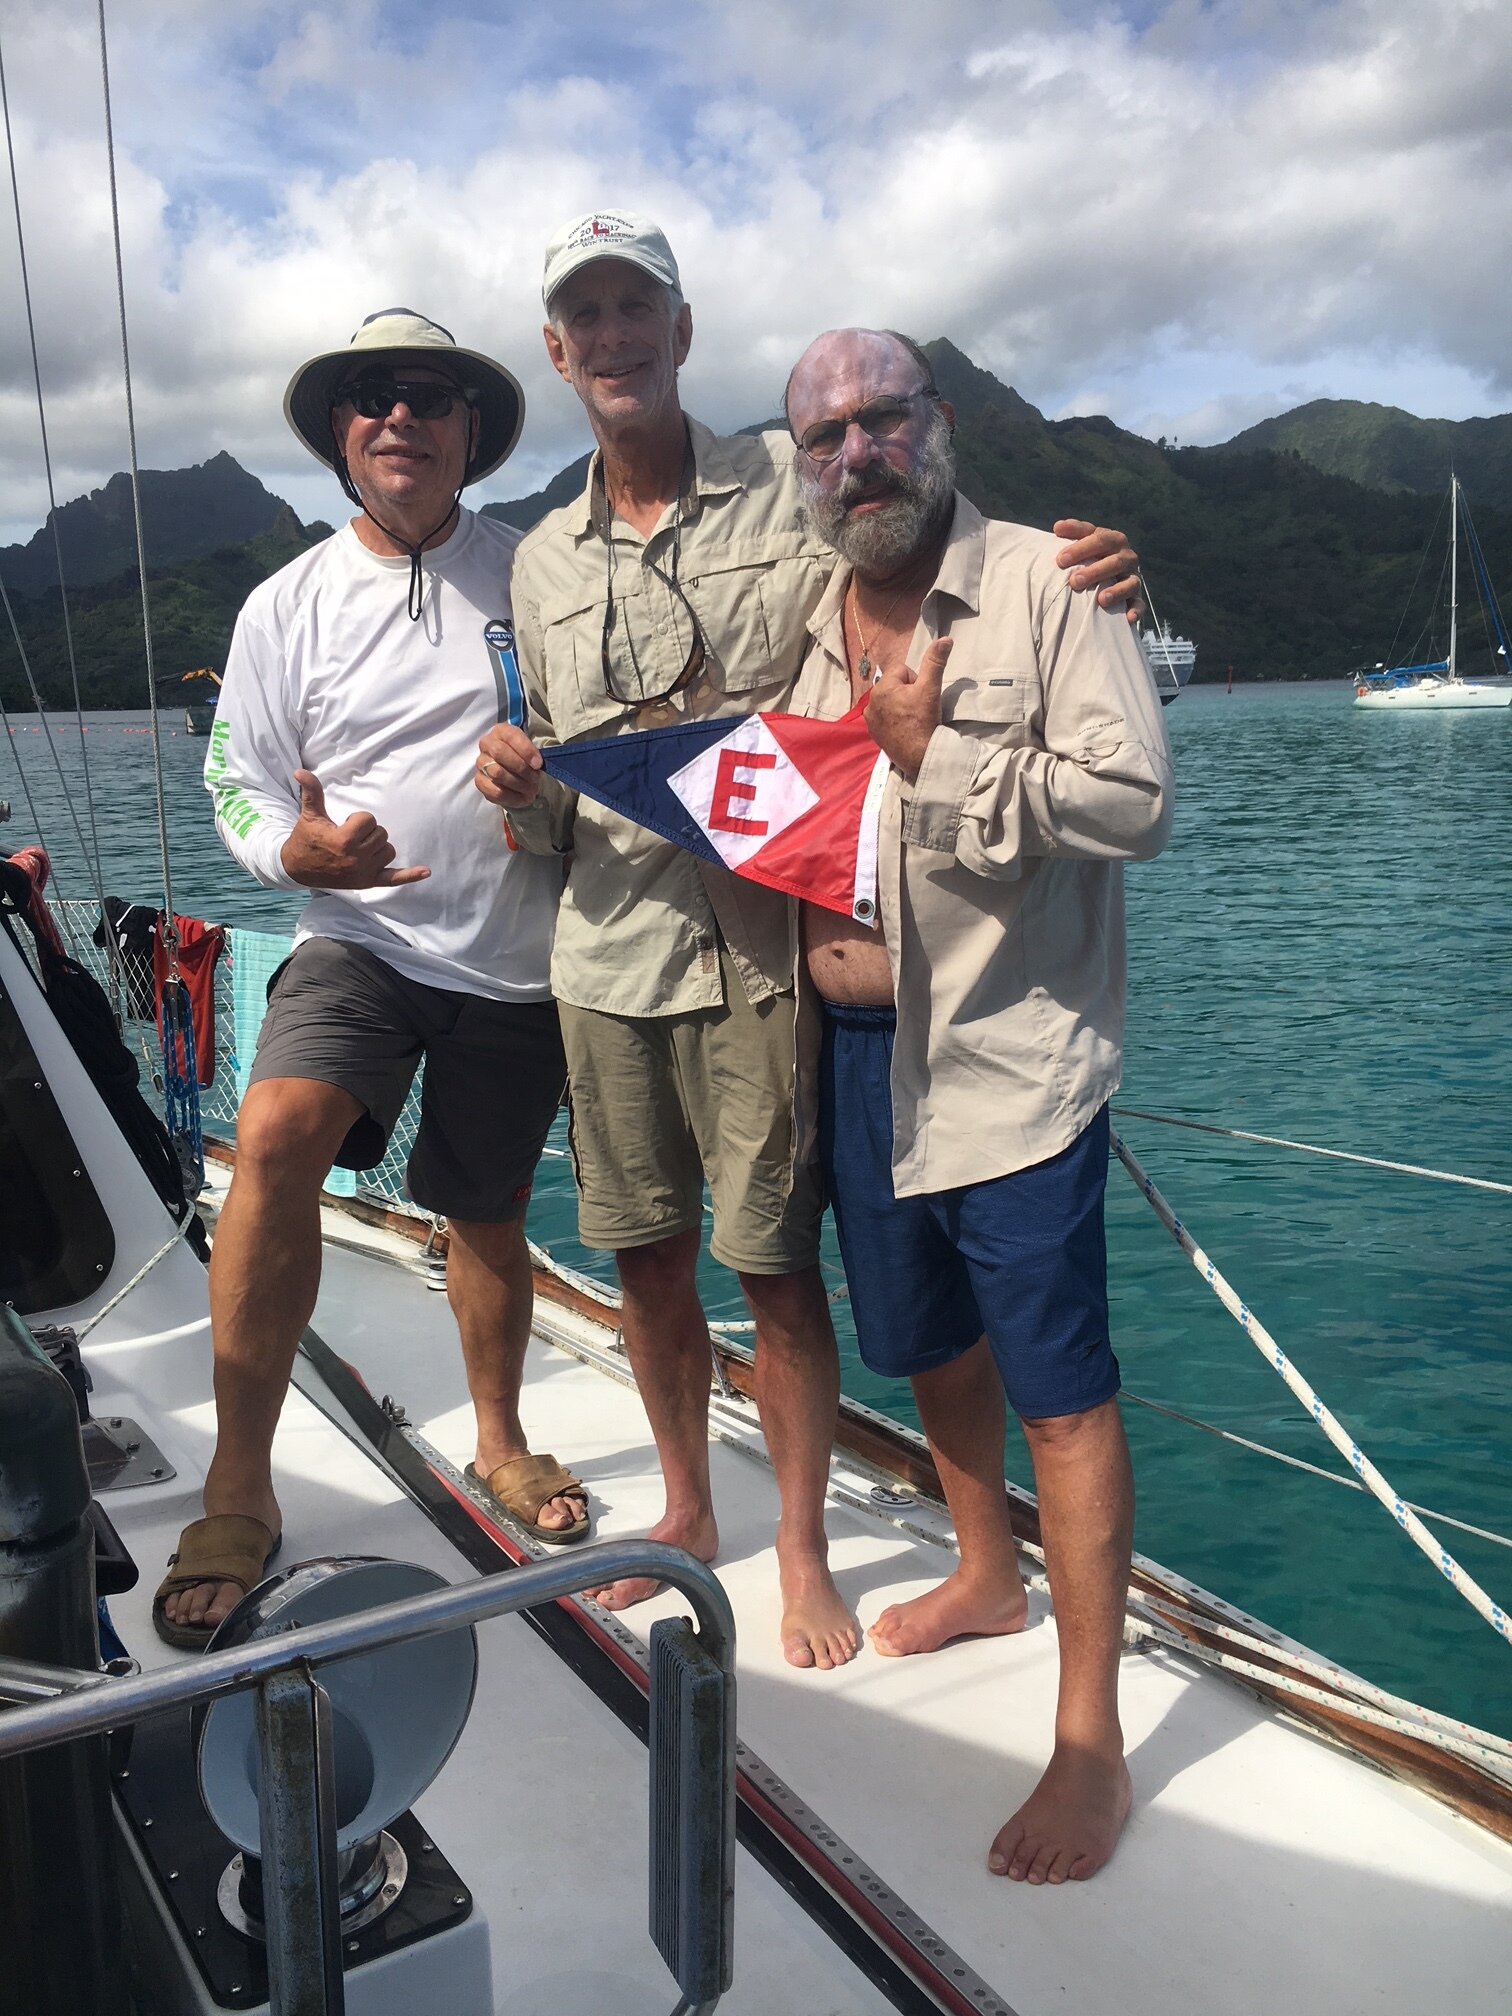  Doug, Lyle, and Richard take a break on their cruise in Moorea, French Polynesia 